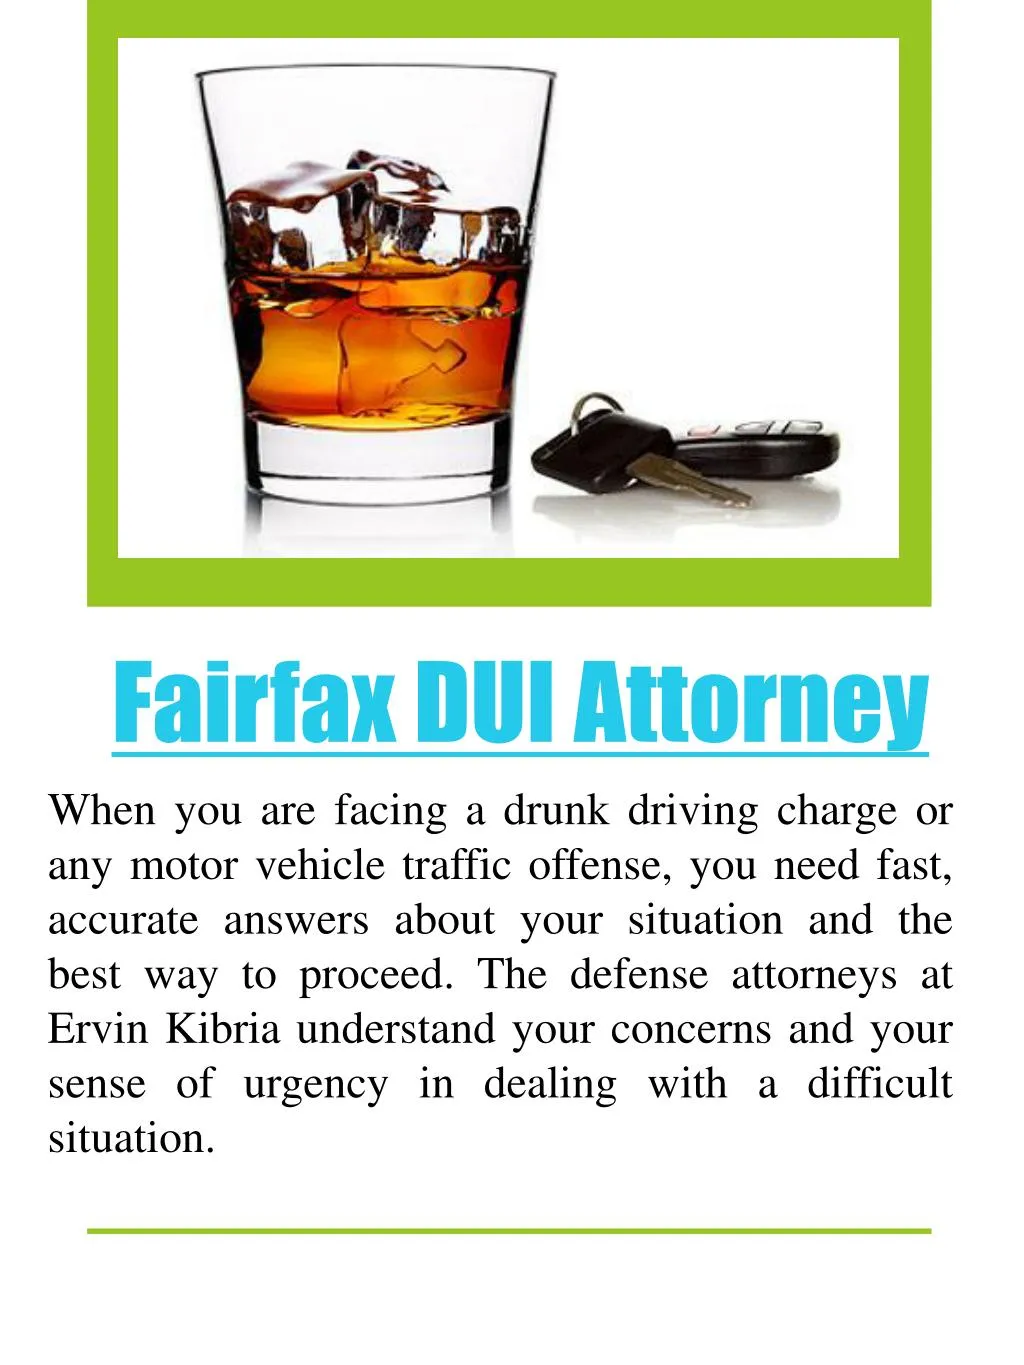 fairfax dui attorney